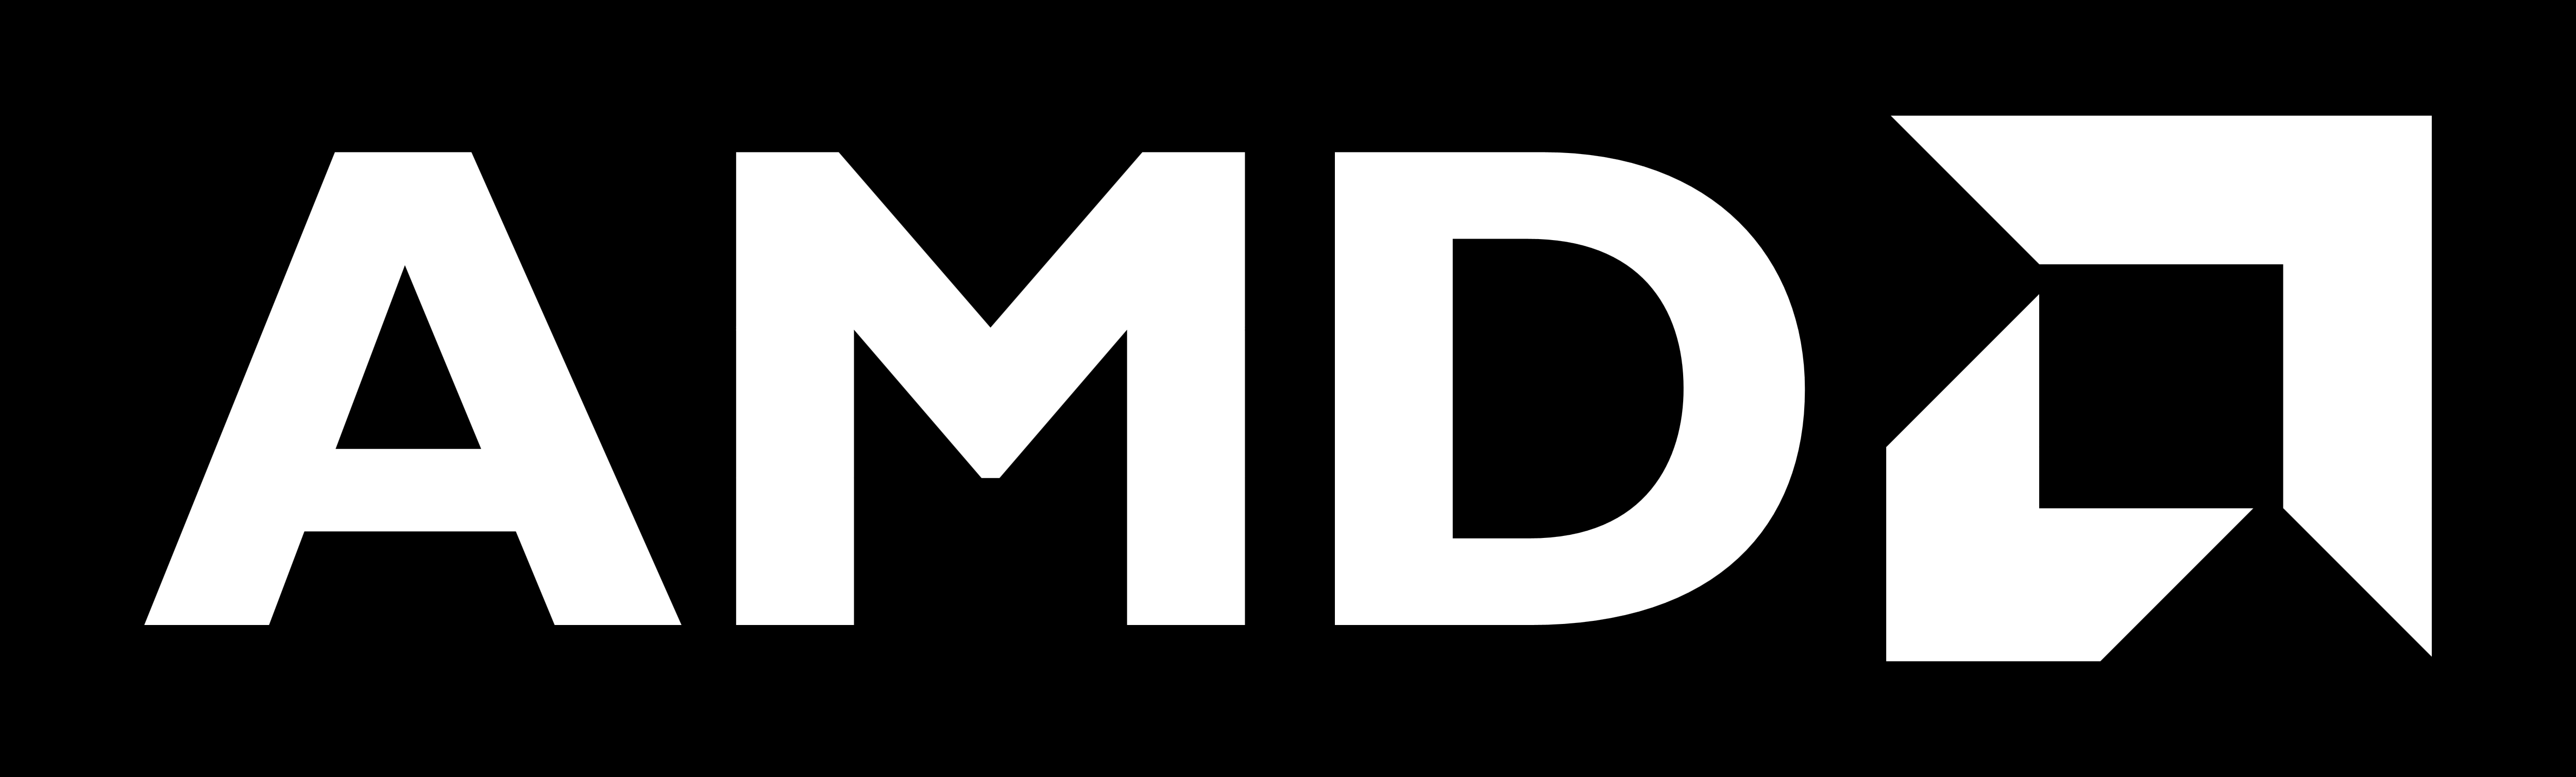 Black AMD Logo - AMD logo, logotype, emblem, black background